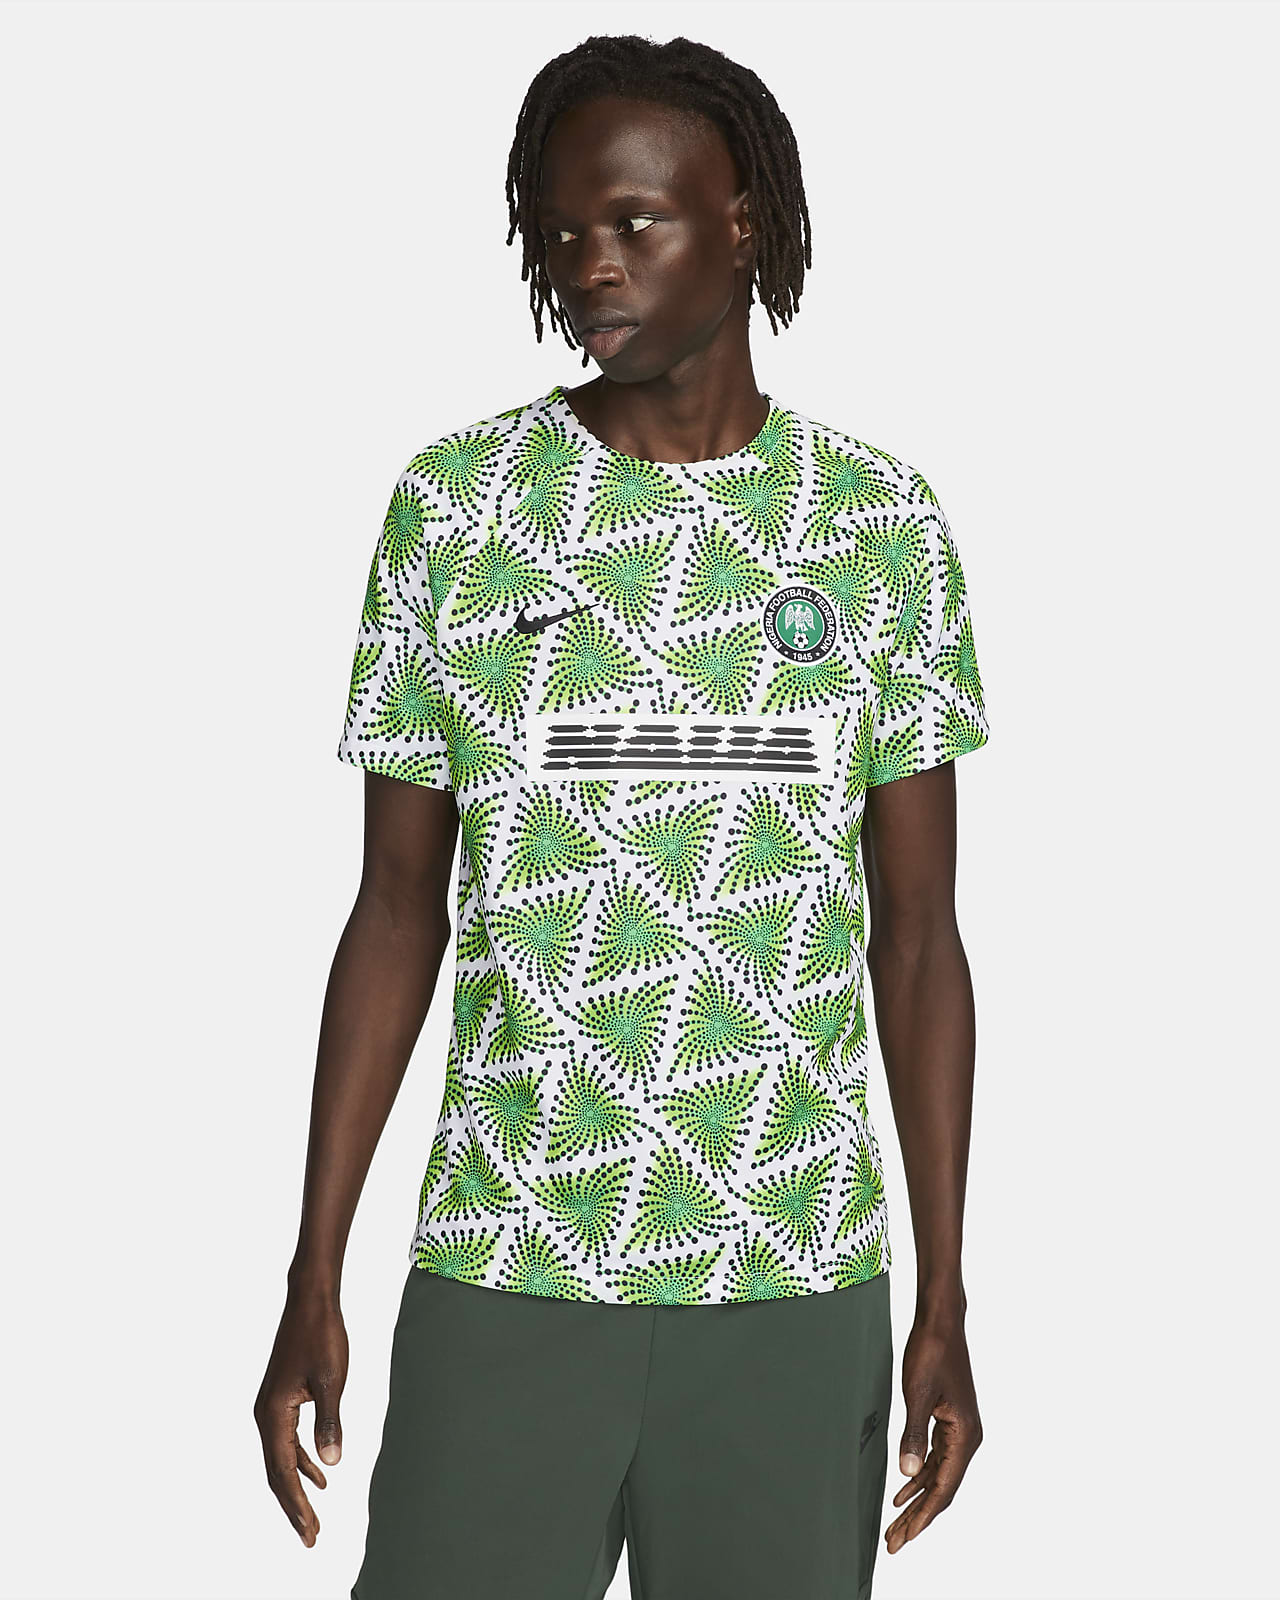 Playera fútbol antes del partido Nike para hombre Nigeria. Nike.com